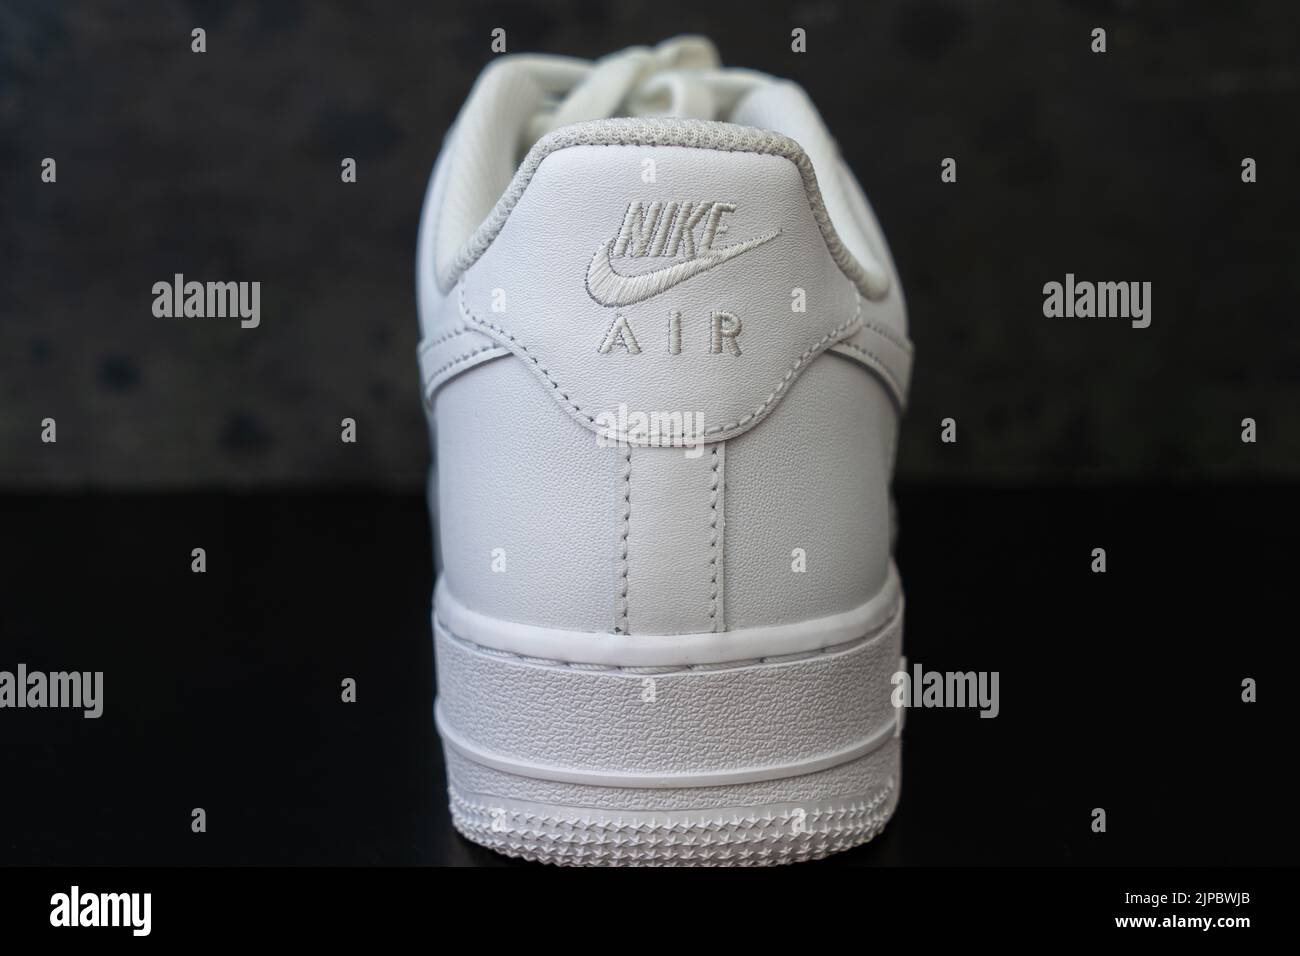 Nike air one e de alta resolución - Alamy